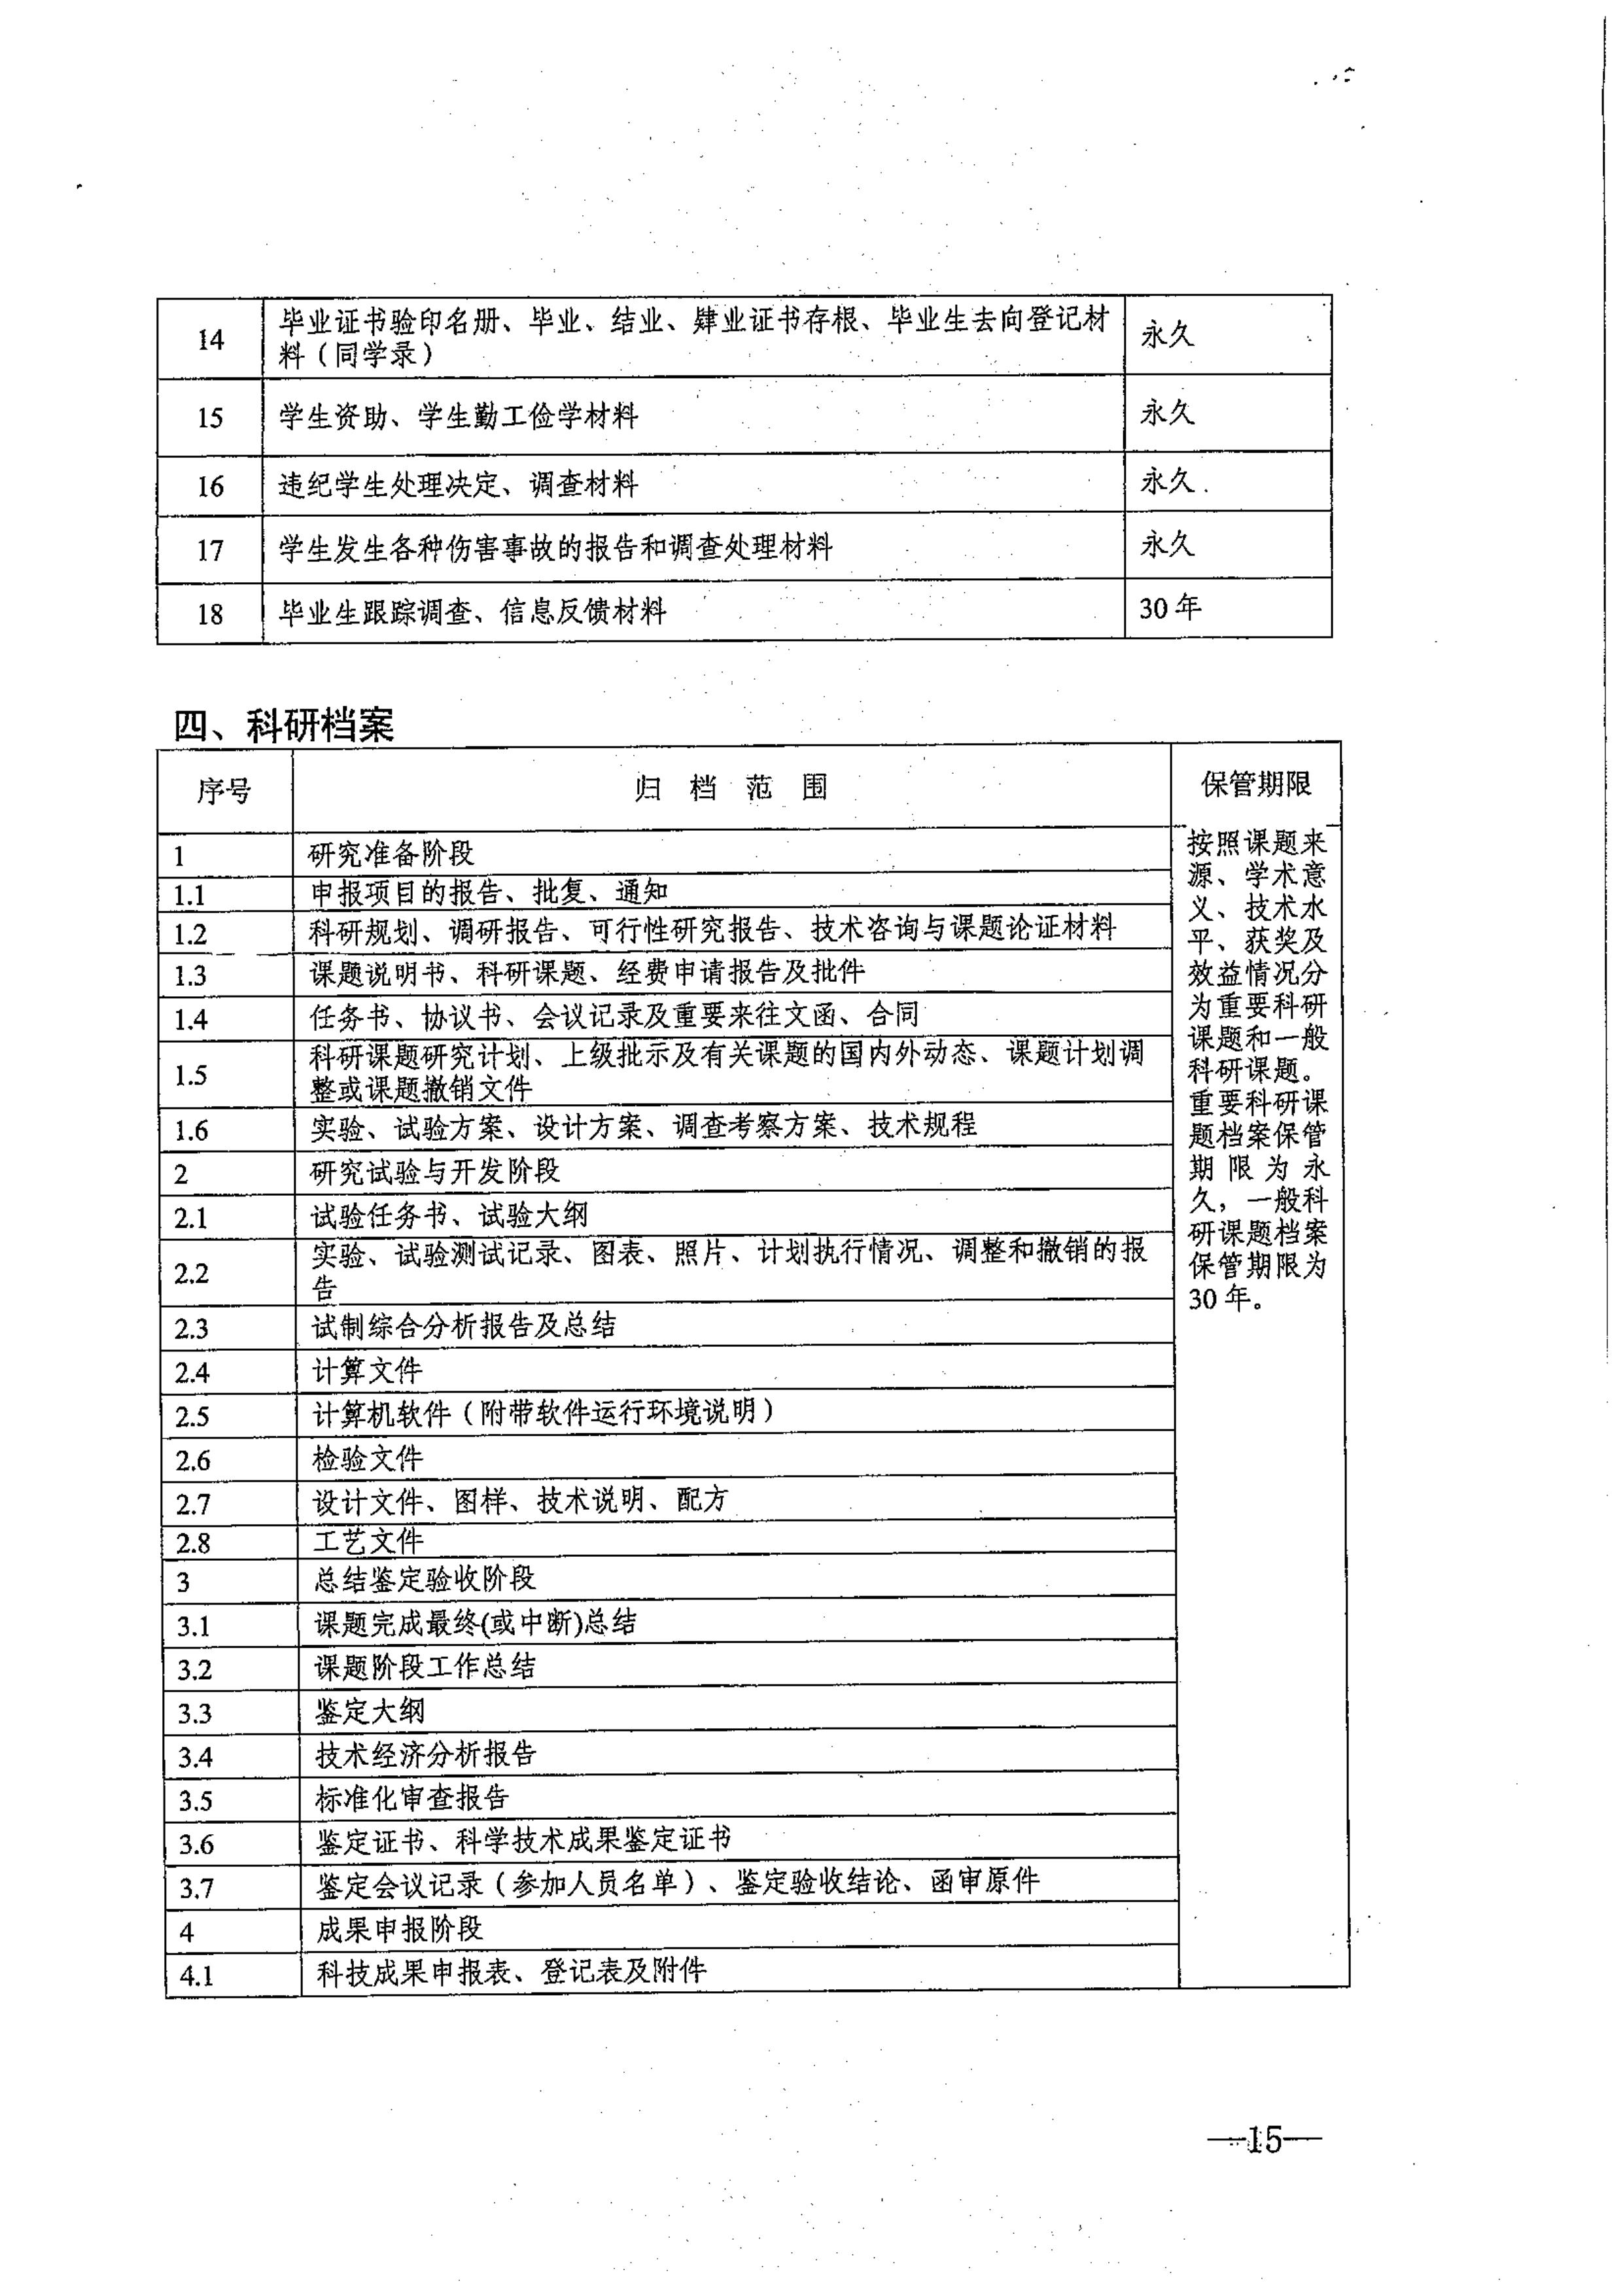 省教育厅、省档案局关于印发《江苏省中小学校档案管理暂行办法》的通知-图片-0015